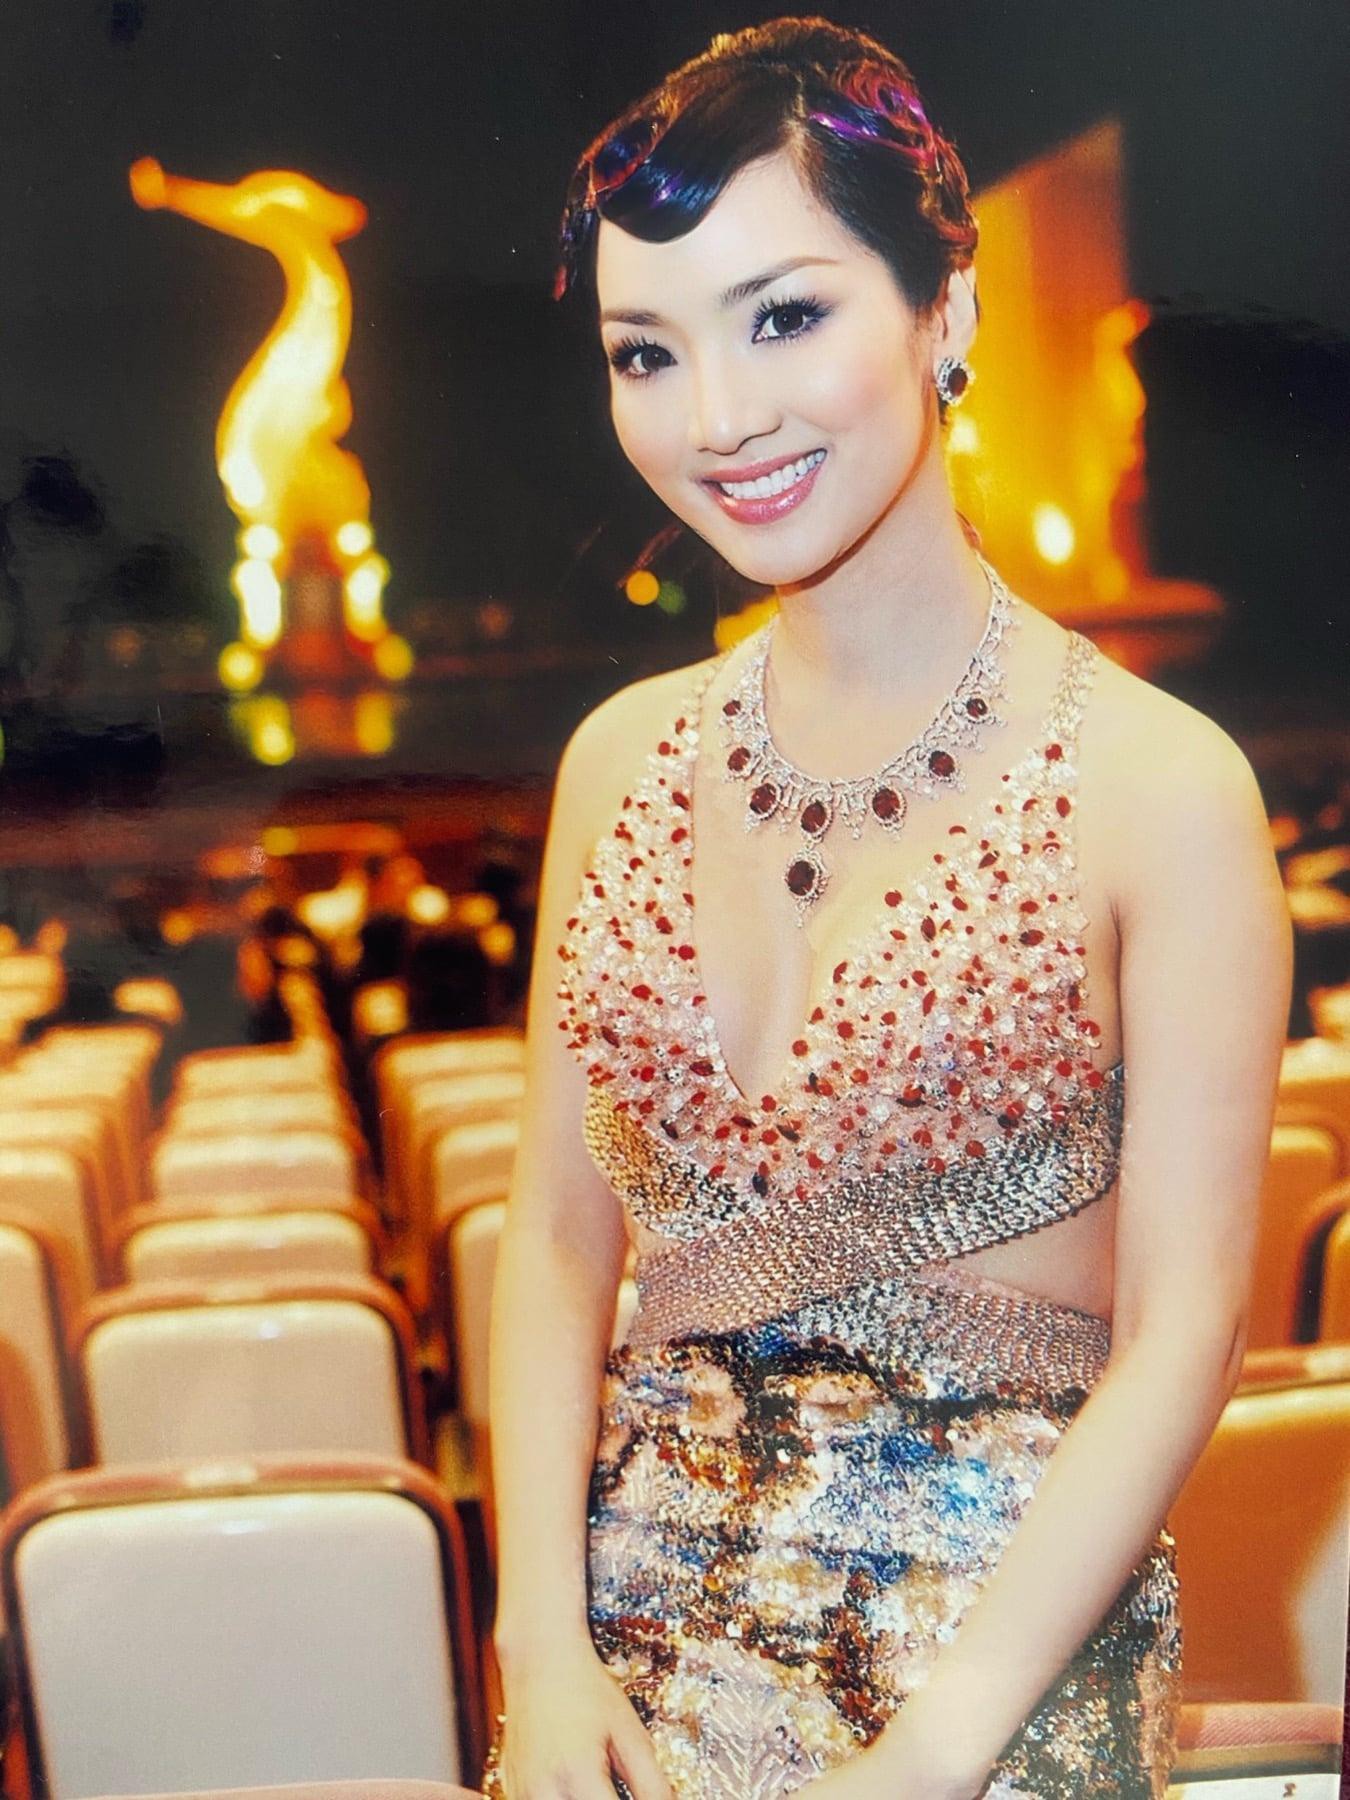 Được biết, cô tham dự Liên hoan phim quốc tế tại Thái Lan với vai trò là tư cách giám đốc đối ngoại của tập đoàn tổ chức